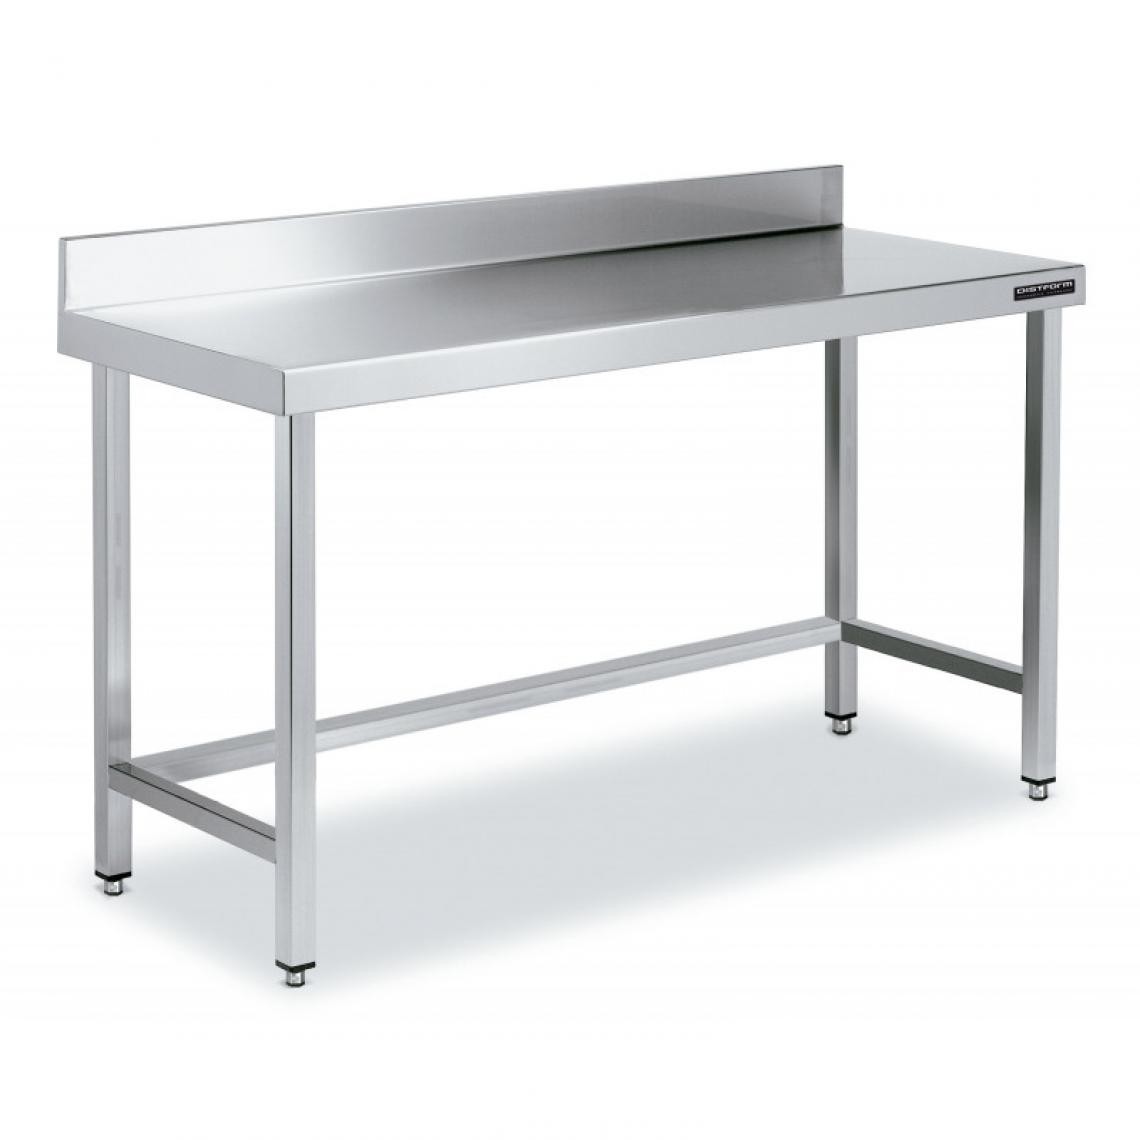 DISTFORM - Table de Travail Adossée Inox avec Renforts - Gamme 600 - Hauteur 600 - Distform - Acier inoxydable2000x600 - Tables à manger